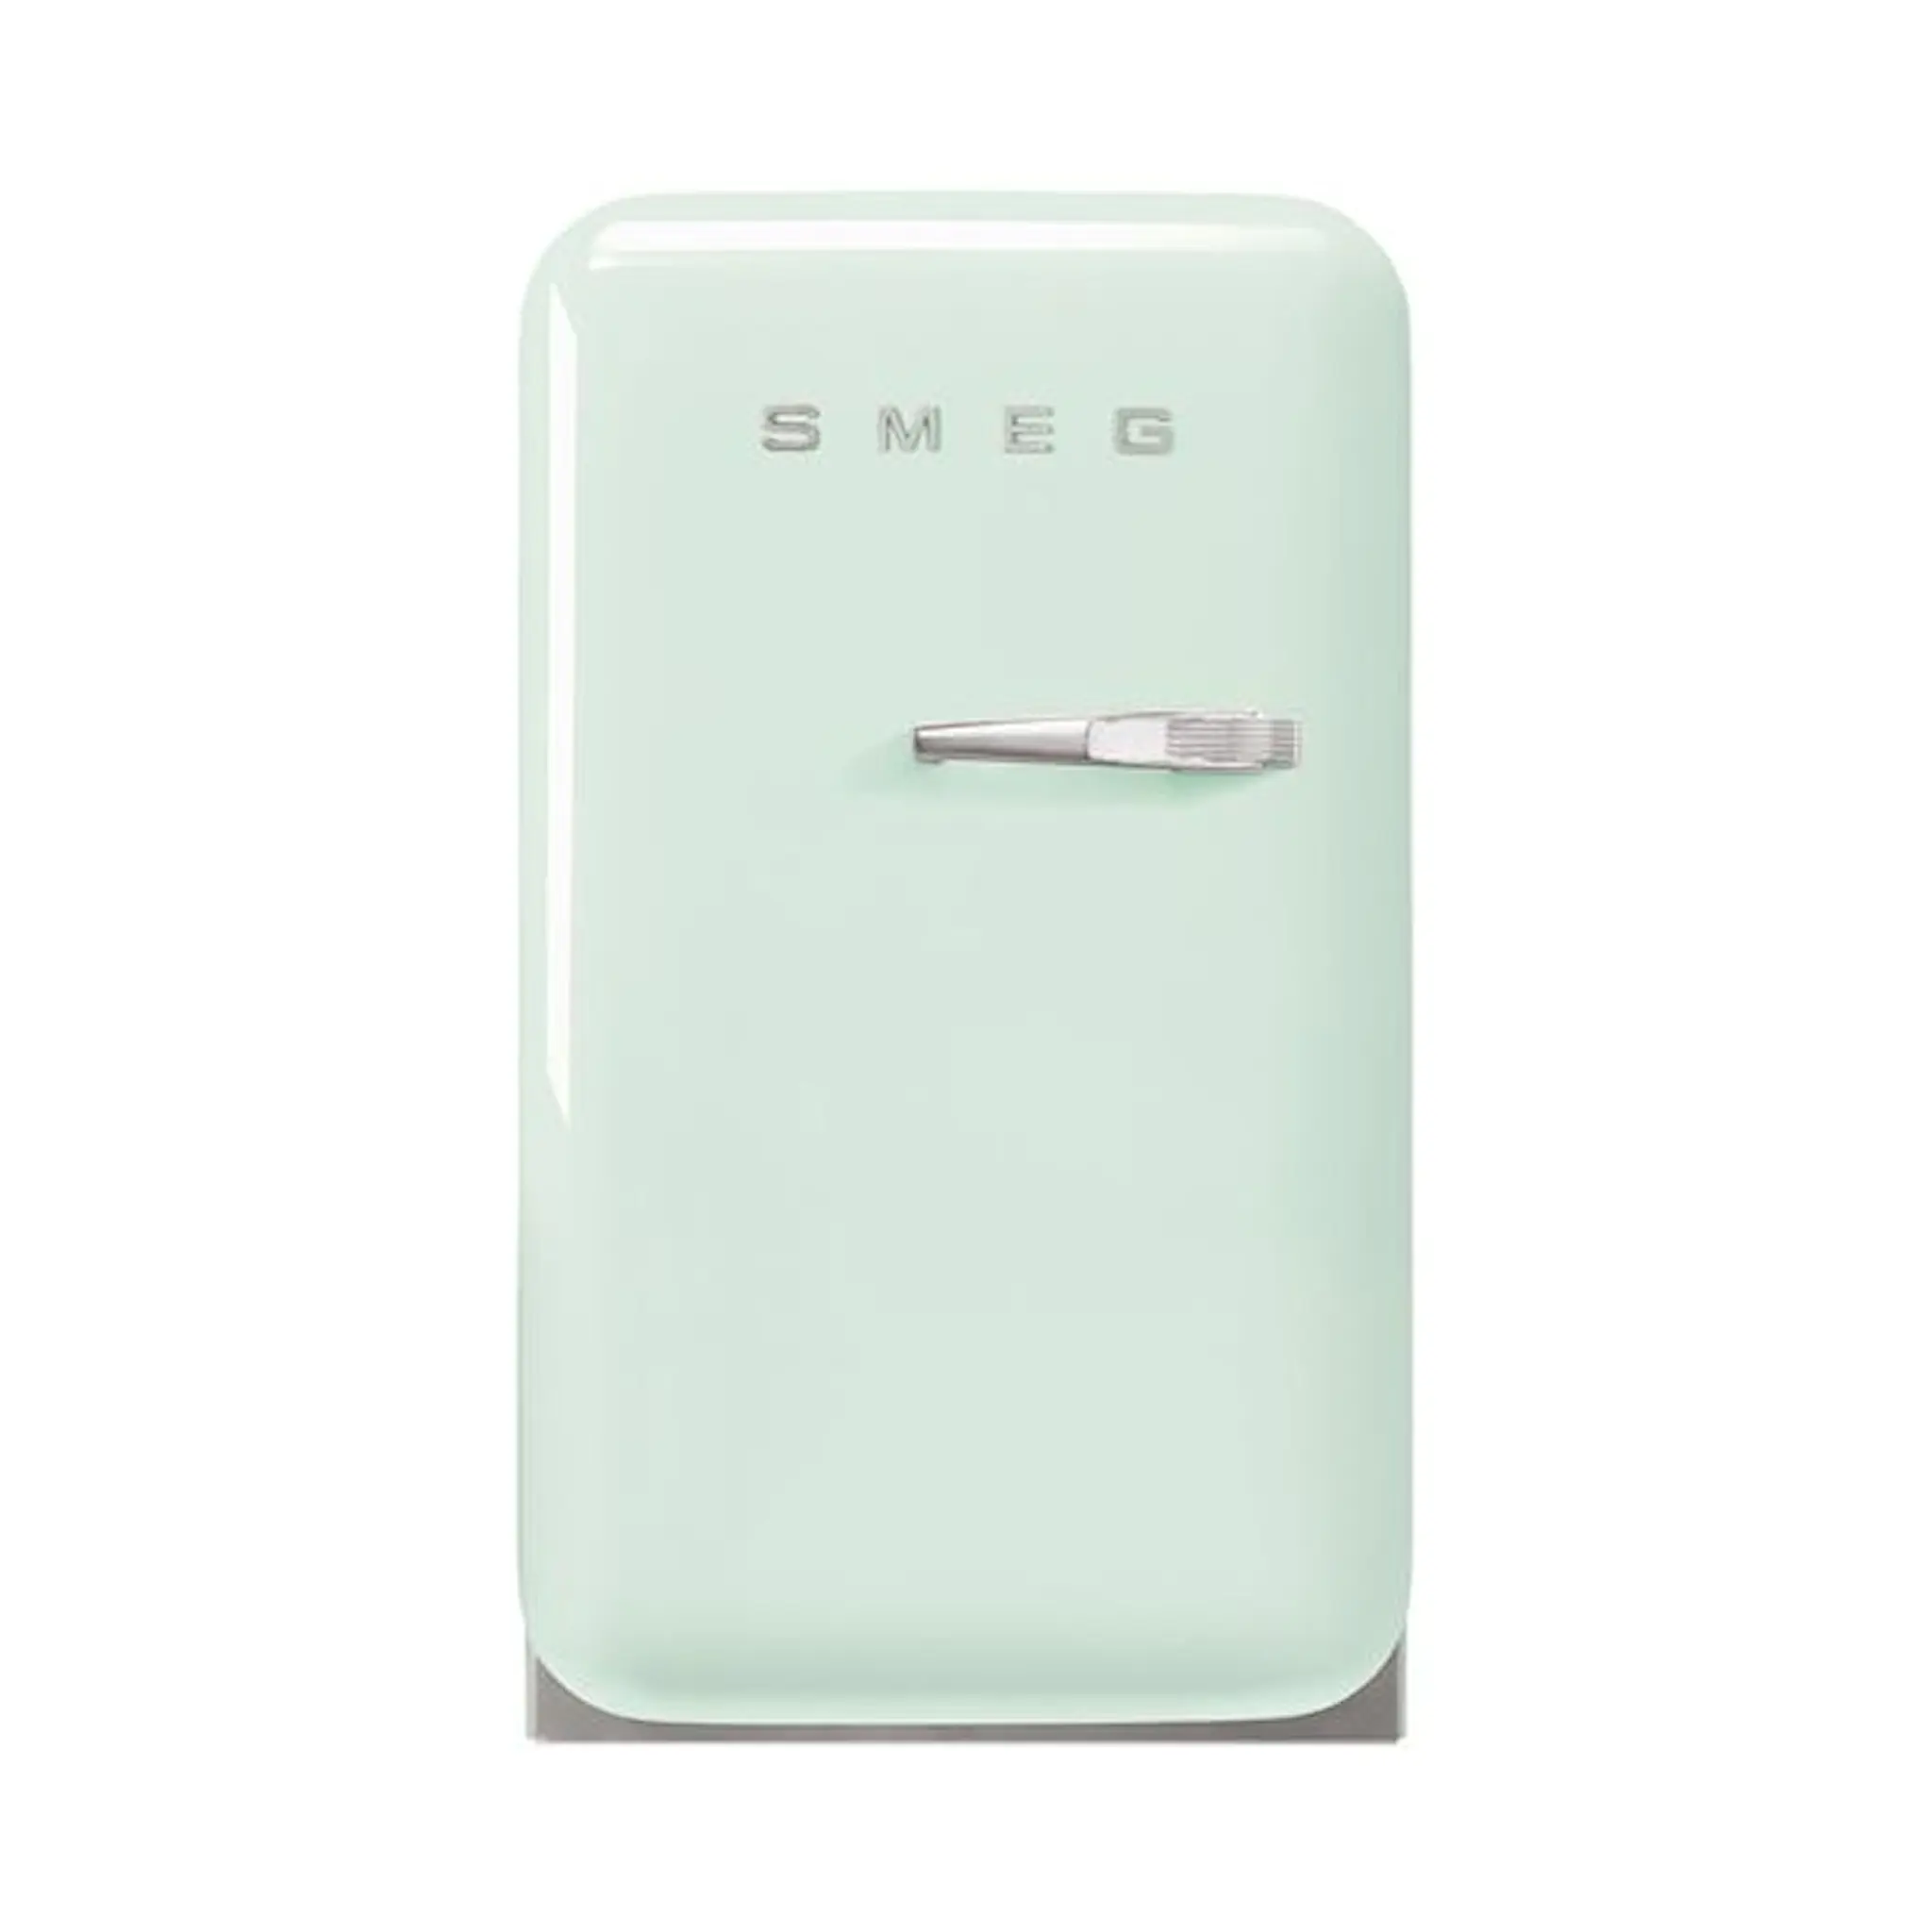 SMEG Minibar Fab5L Vänsterhängd Pastellgrön